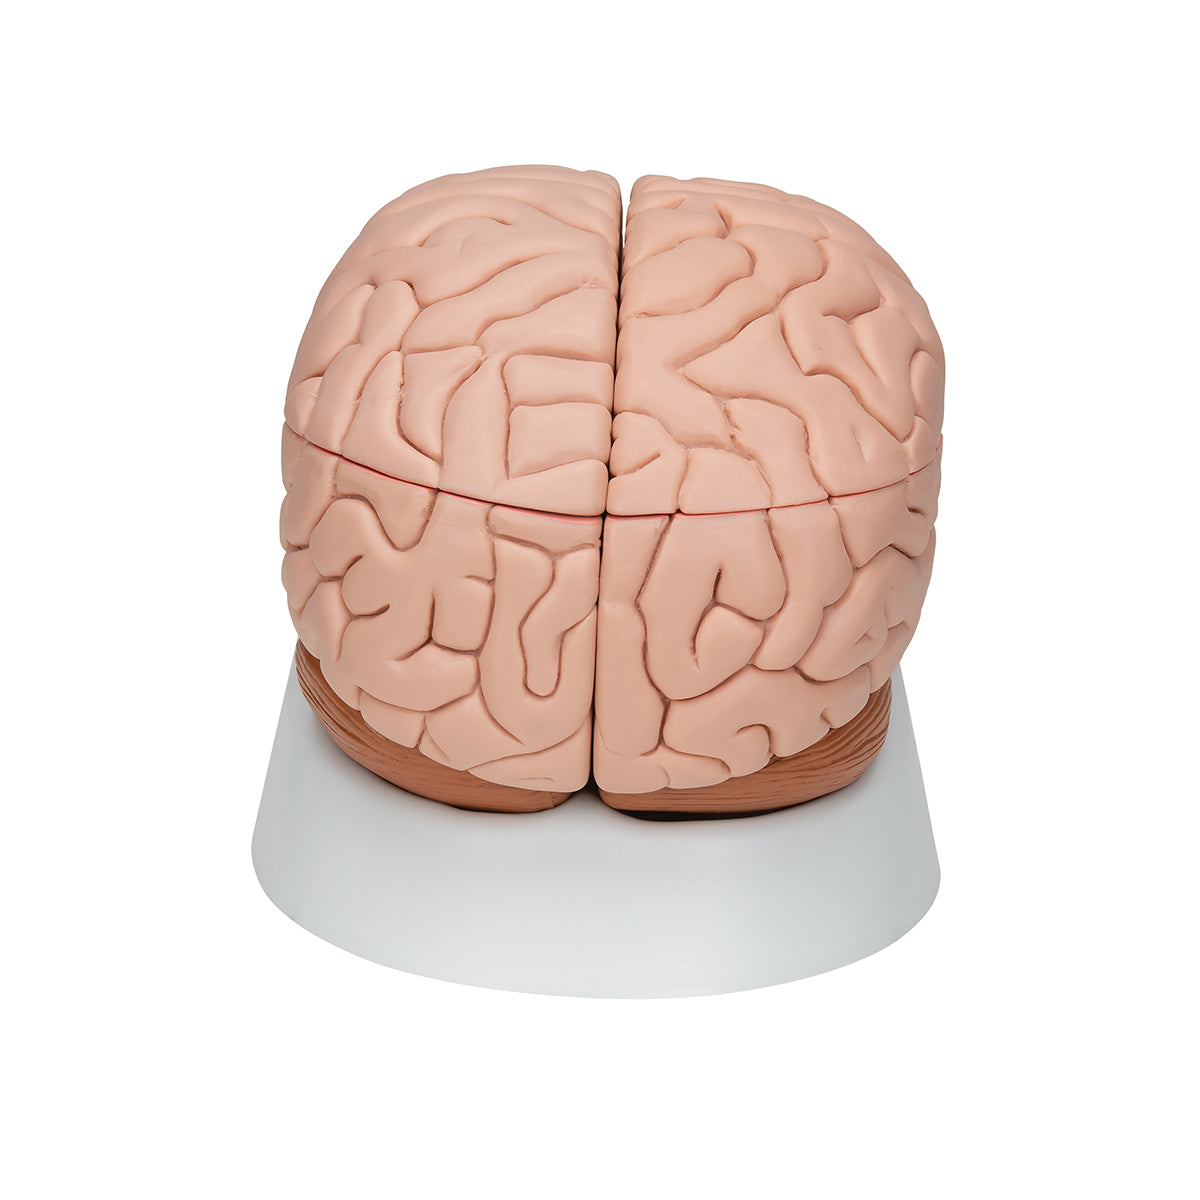 Hjärnmodell med ett mindre verklighetstroget utseende. Kan delas upp i 8 delar